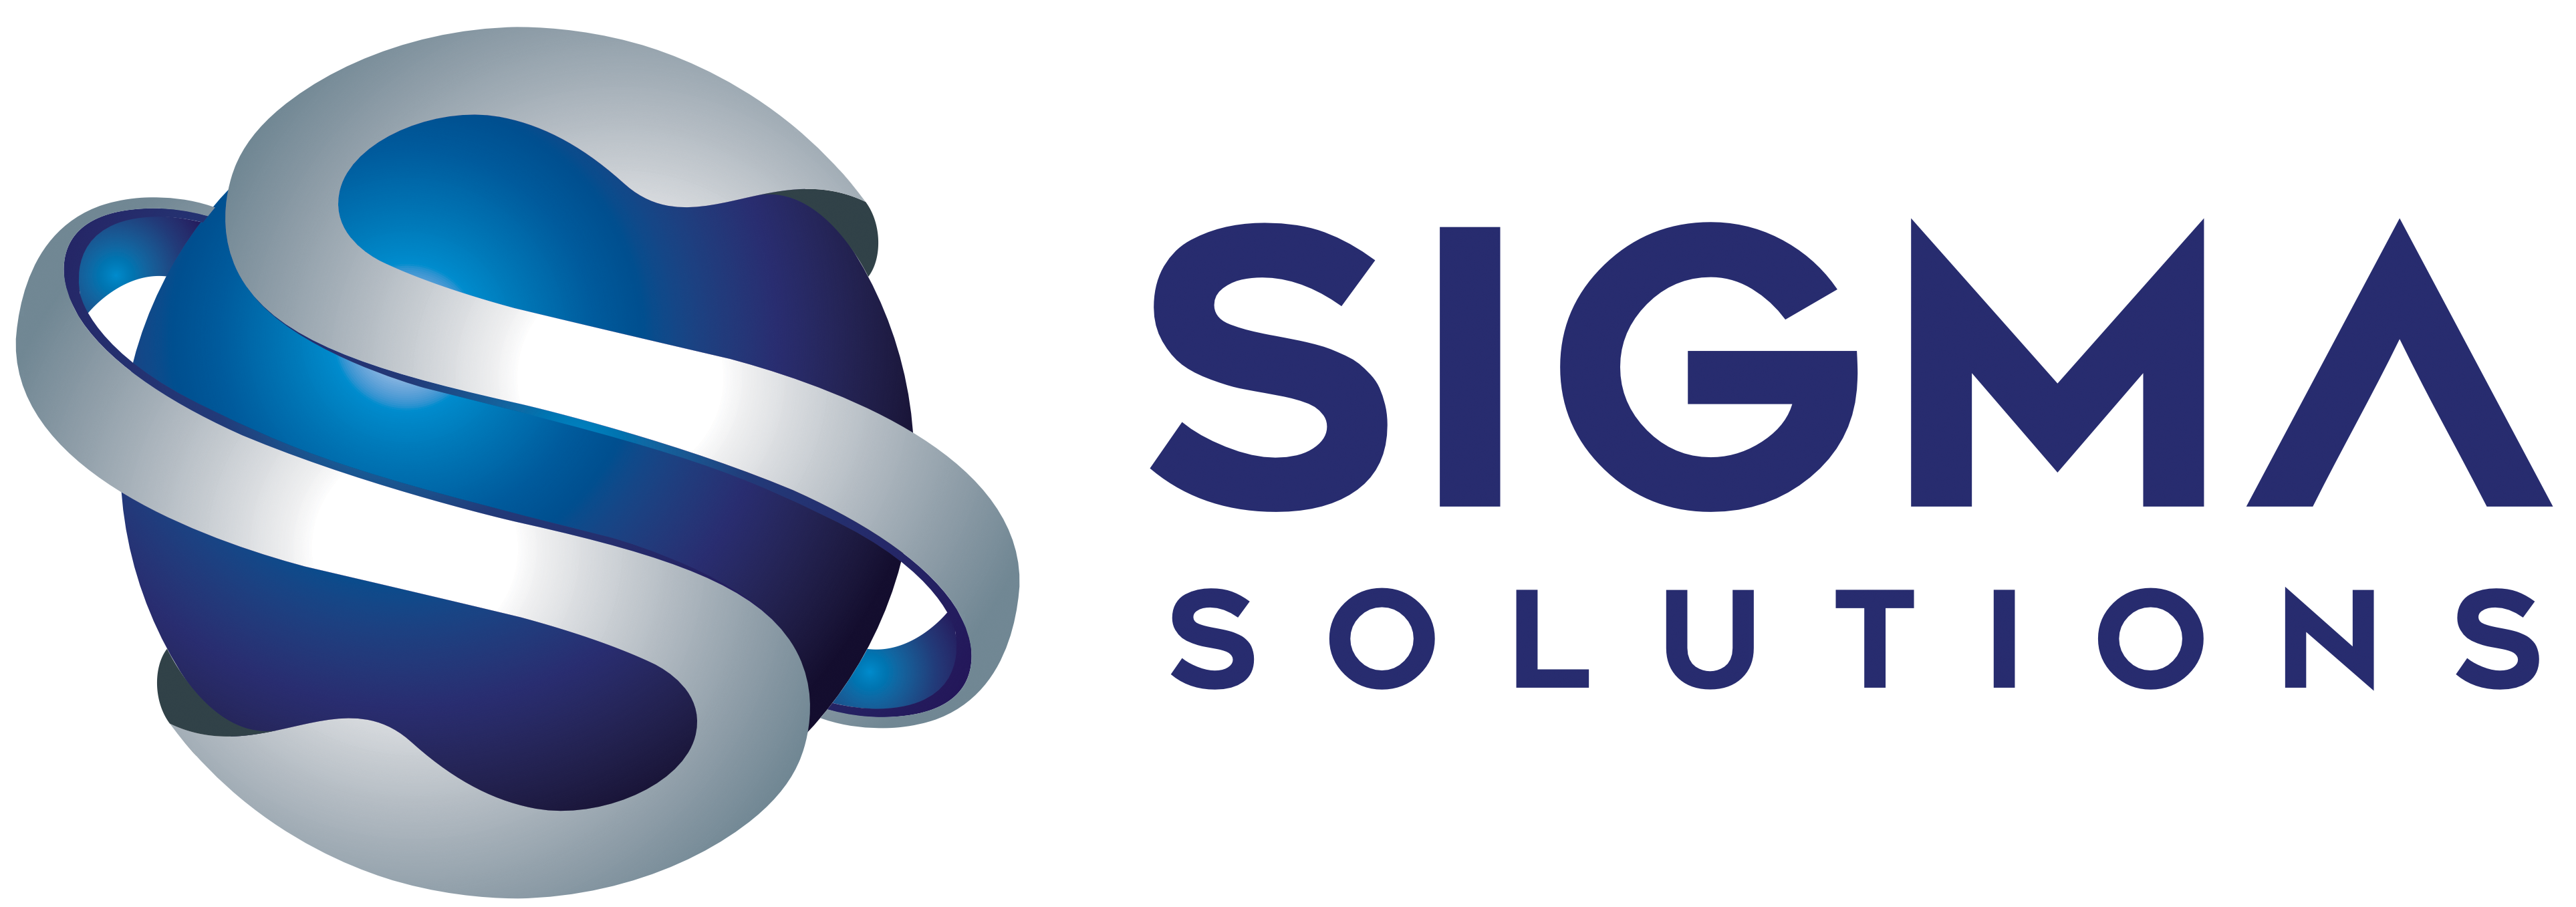 Sigma Solutions - Vistorias Securitárias